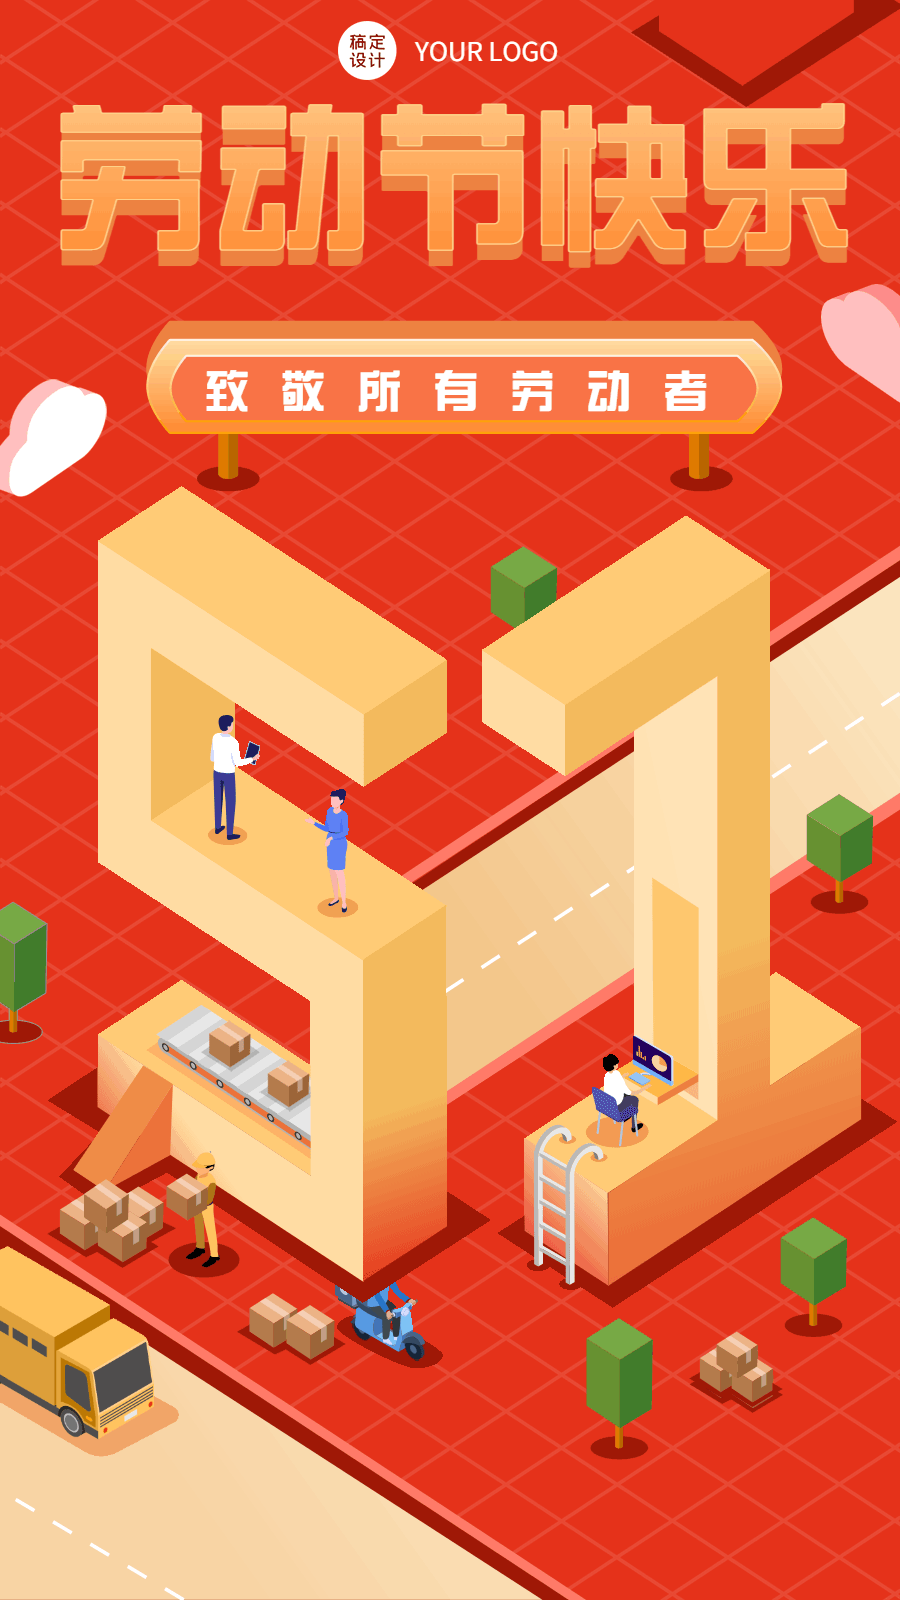 劳动节节日祝福插画动态手机海报